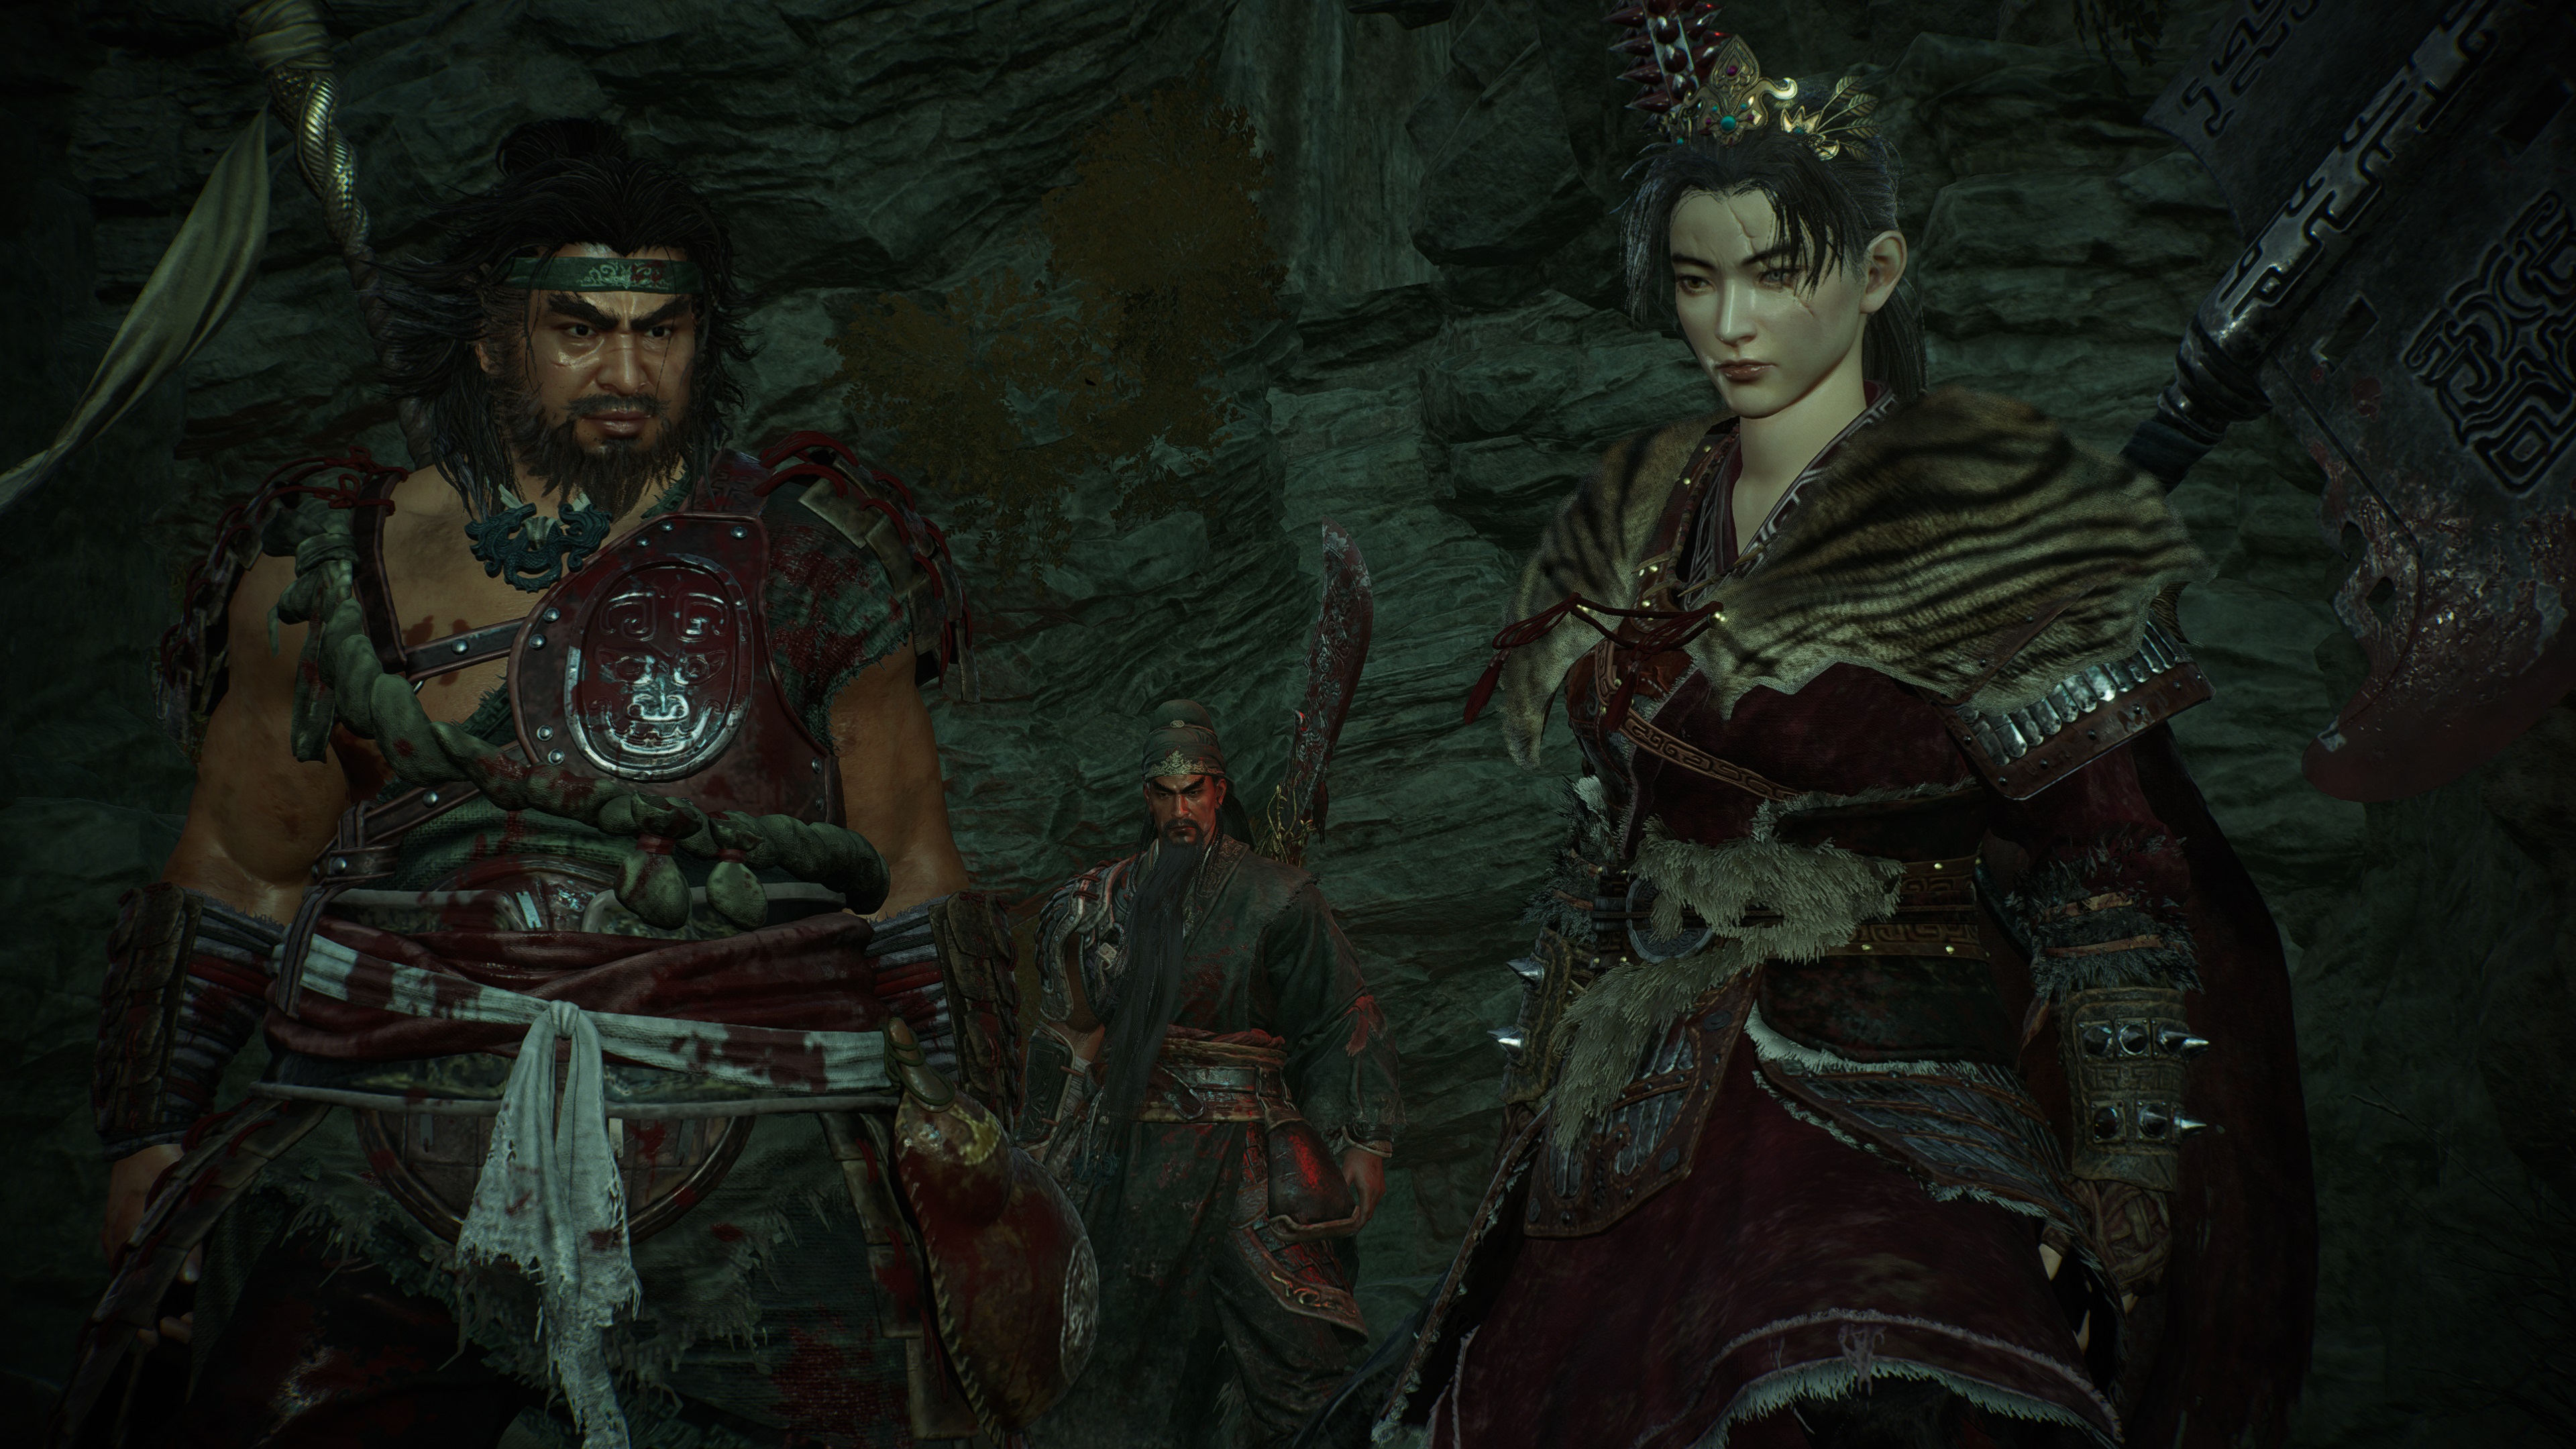 Внутриигровой скриншот Wo Long: Fallen Dynasty, на котором игрок стоит рядом с союзниками-неигровыми персонажами, сделанный в режиме фотосъемки.